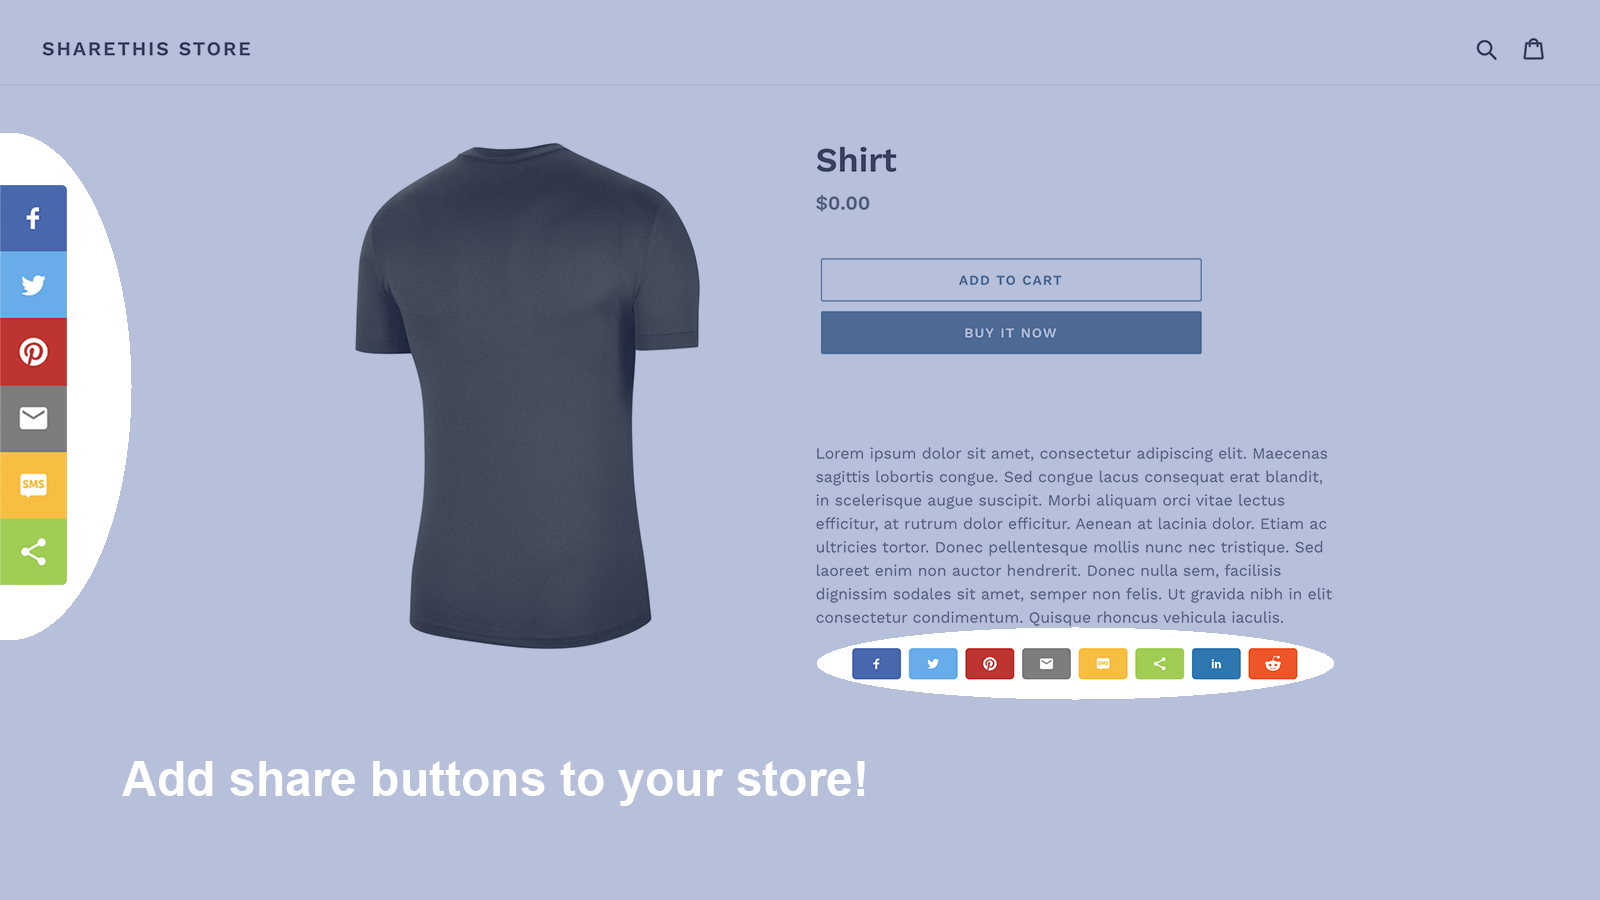 Beispiel für inline und sticky Share-Buttons in einem Shop.